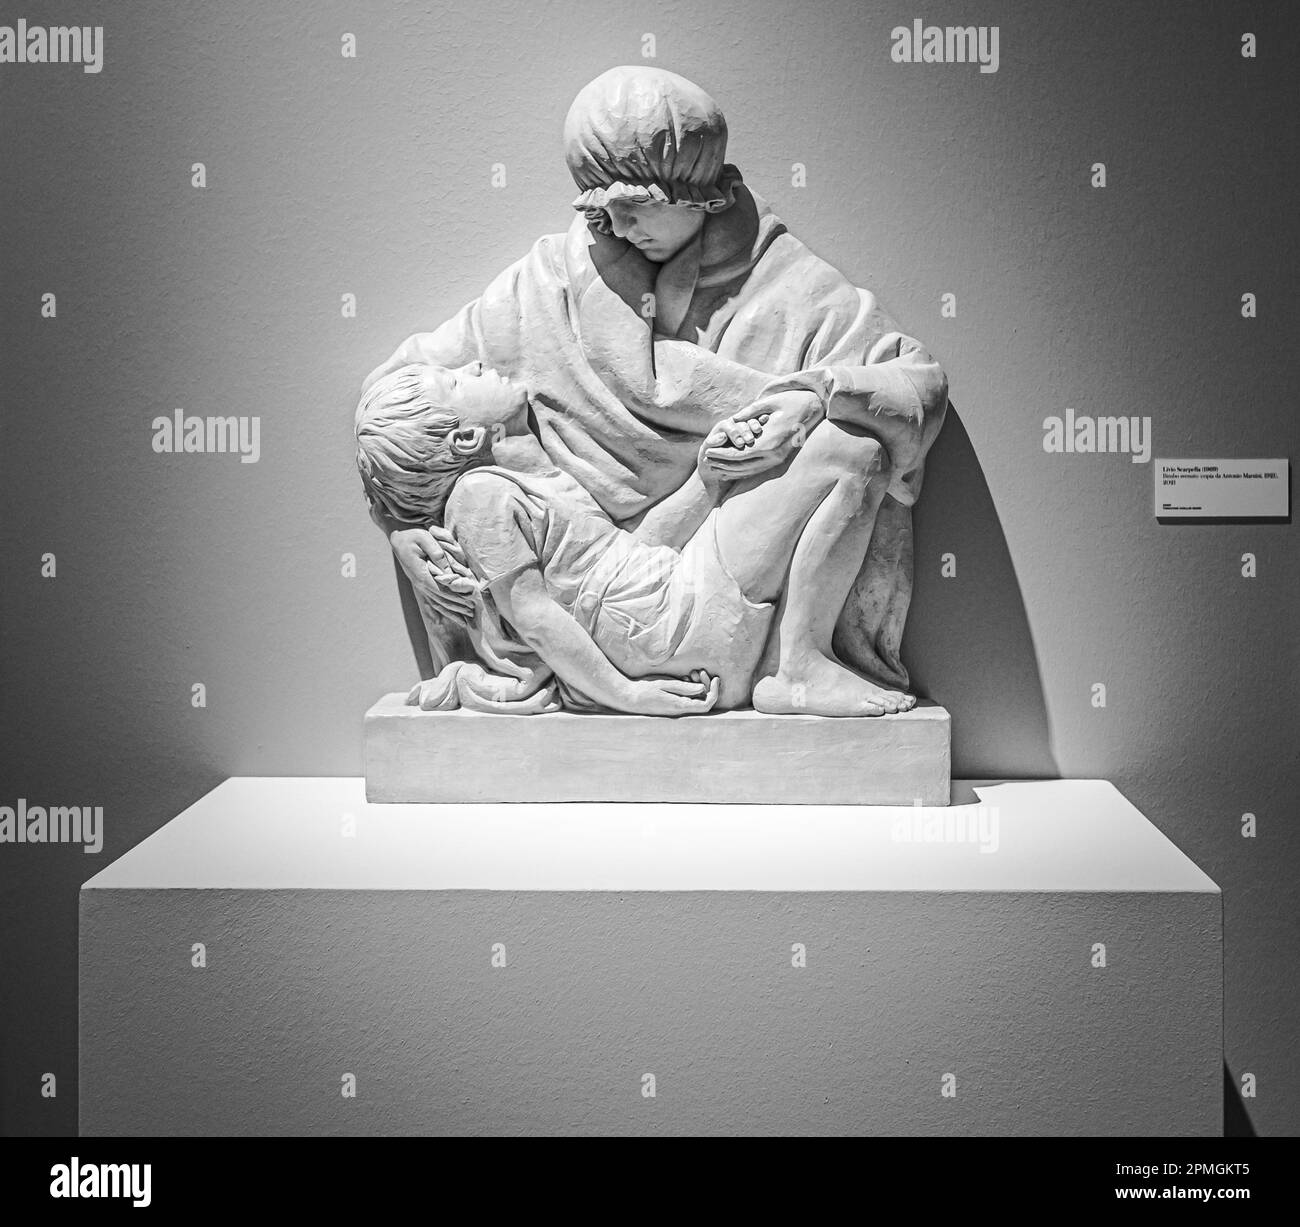 Bimbo svenuto (niño desmayado 2021) - obra artística del artista Livio Scarpella en exposición en el Museo MART-Rovereto, Trento, Italia Foto de stock